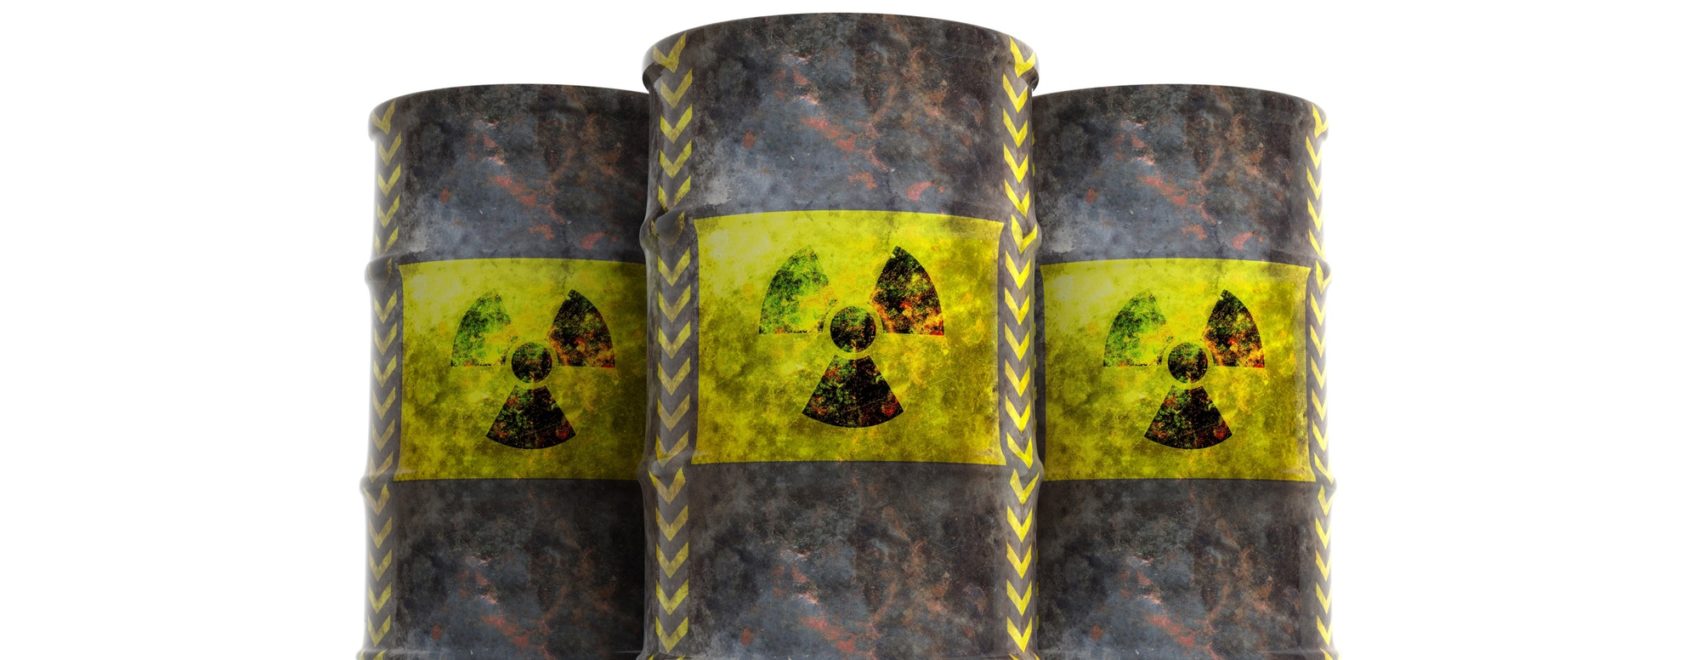 Radiation symbol on oil barrels, white background. 3d illustration